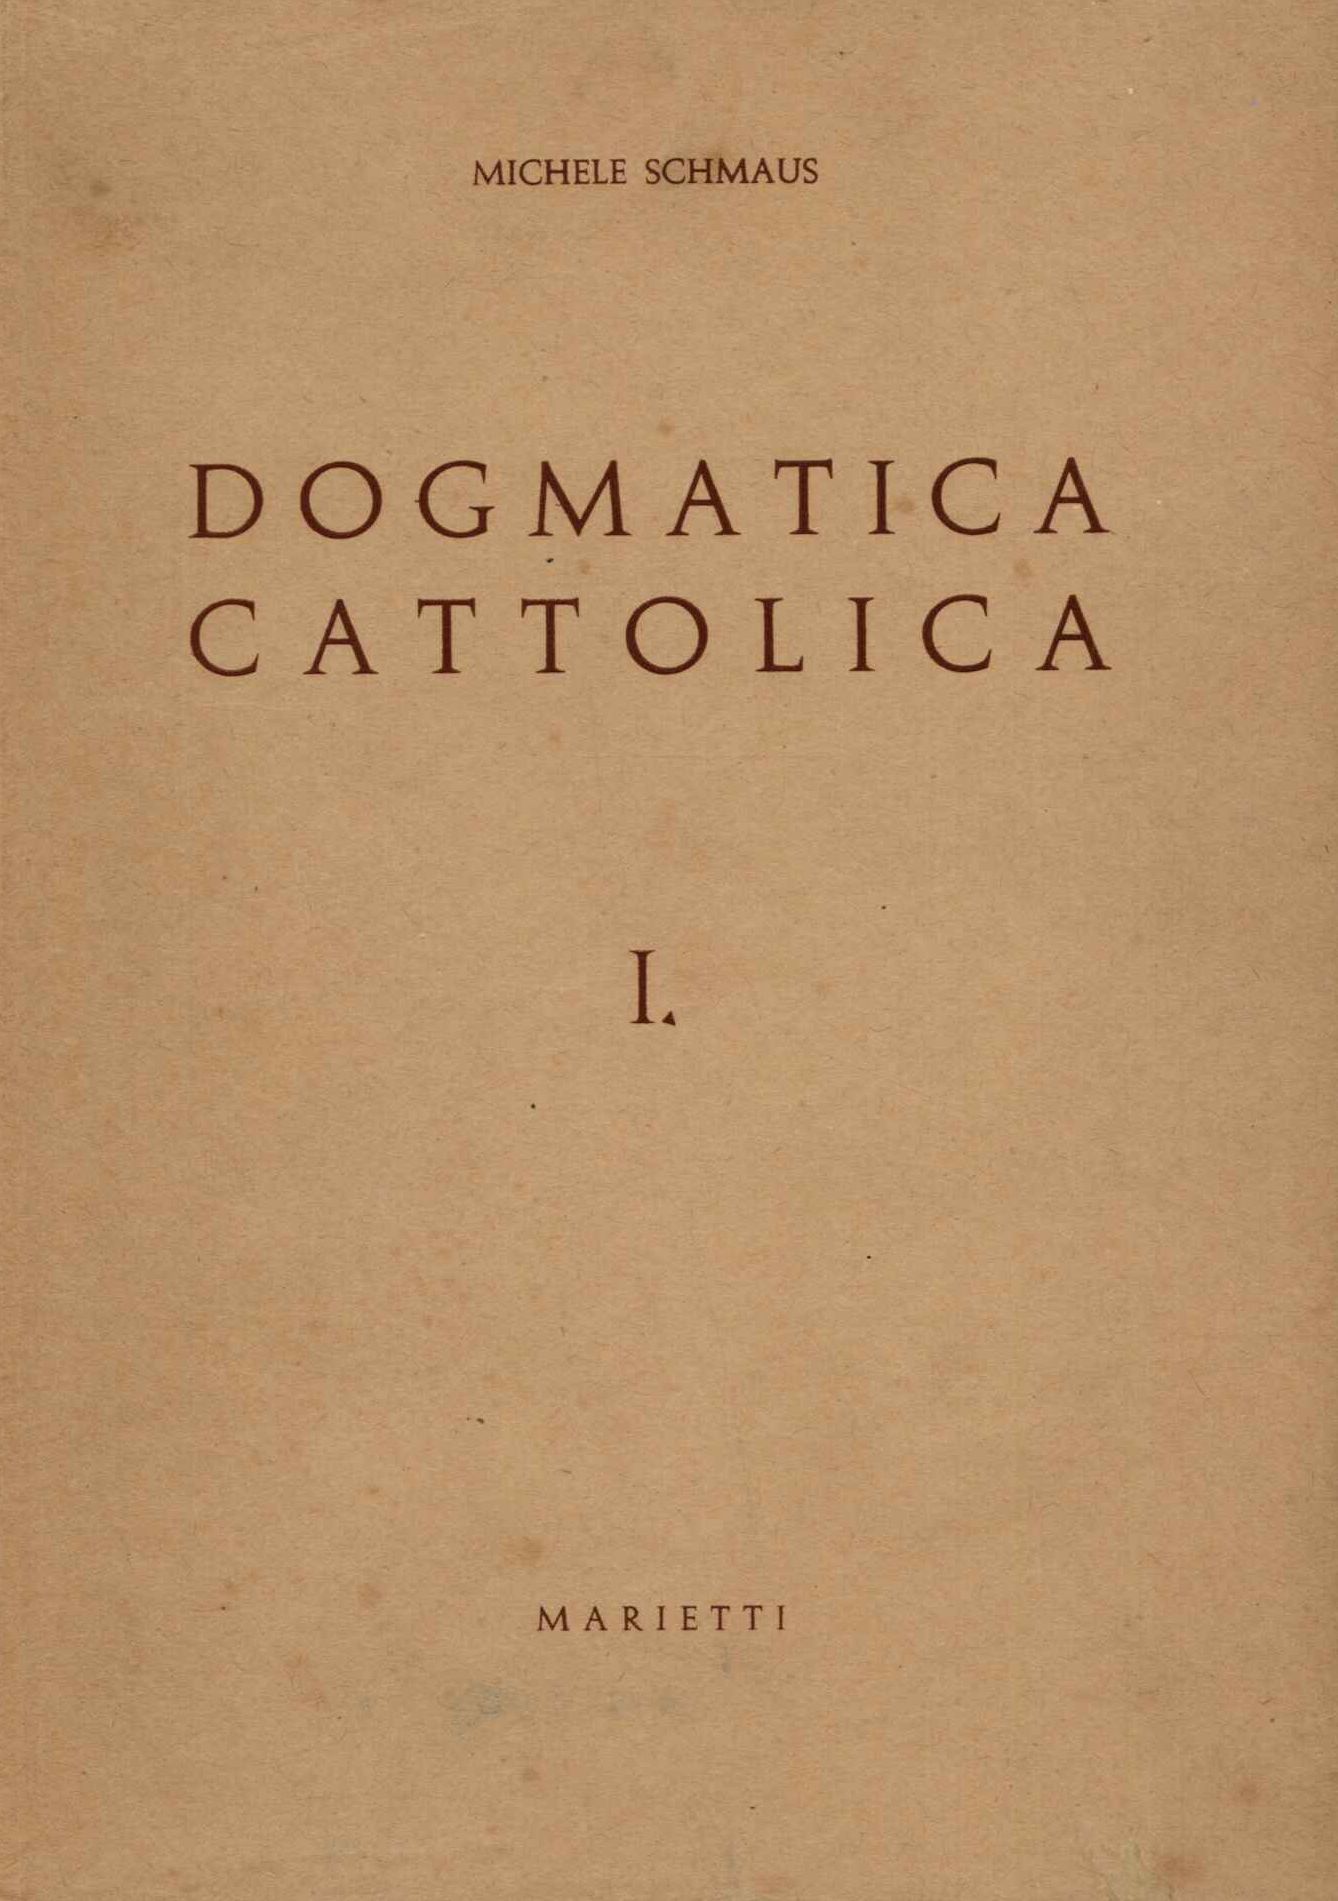 Dogmatica cattolica I°